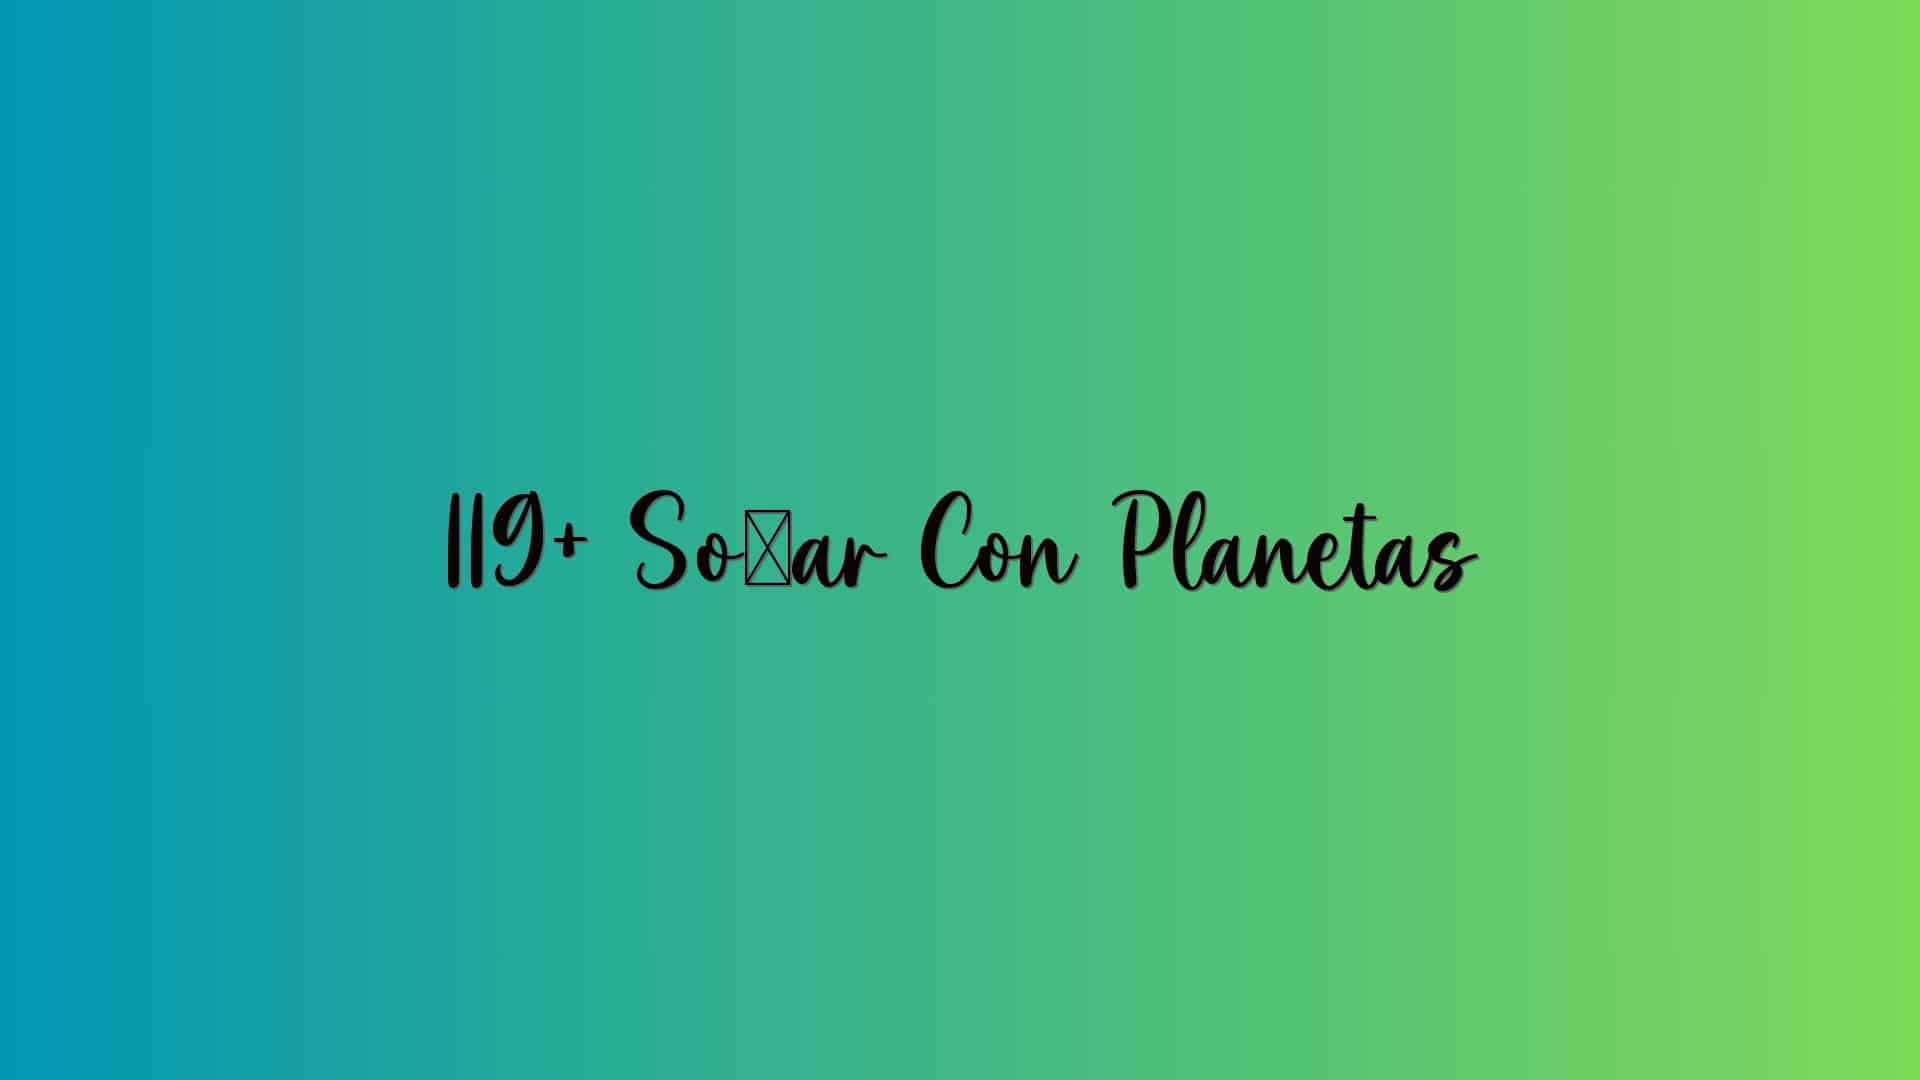 119+ Soñar Con Planetas